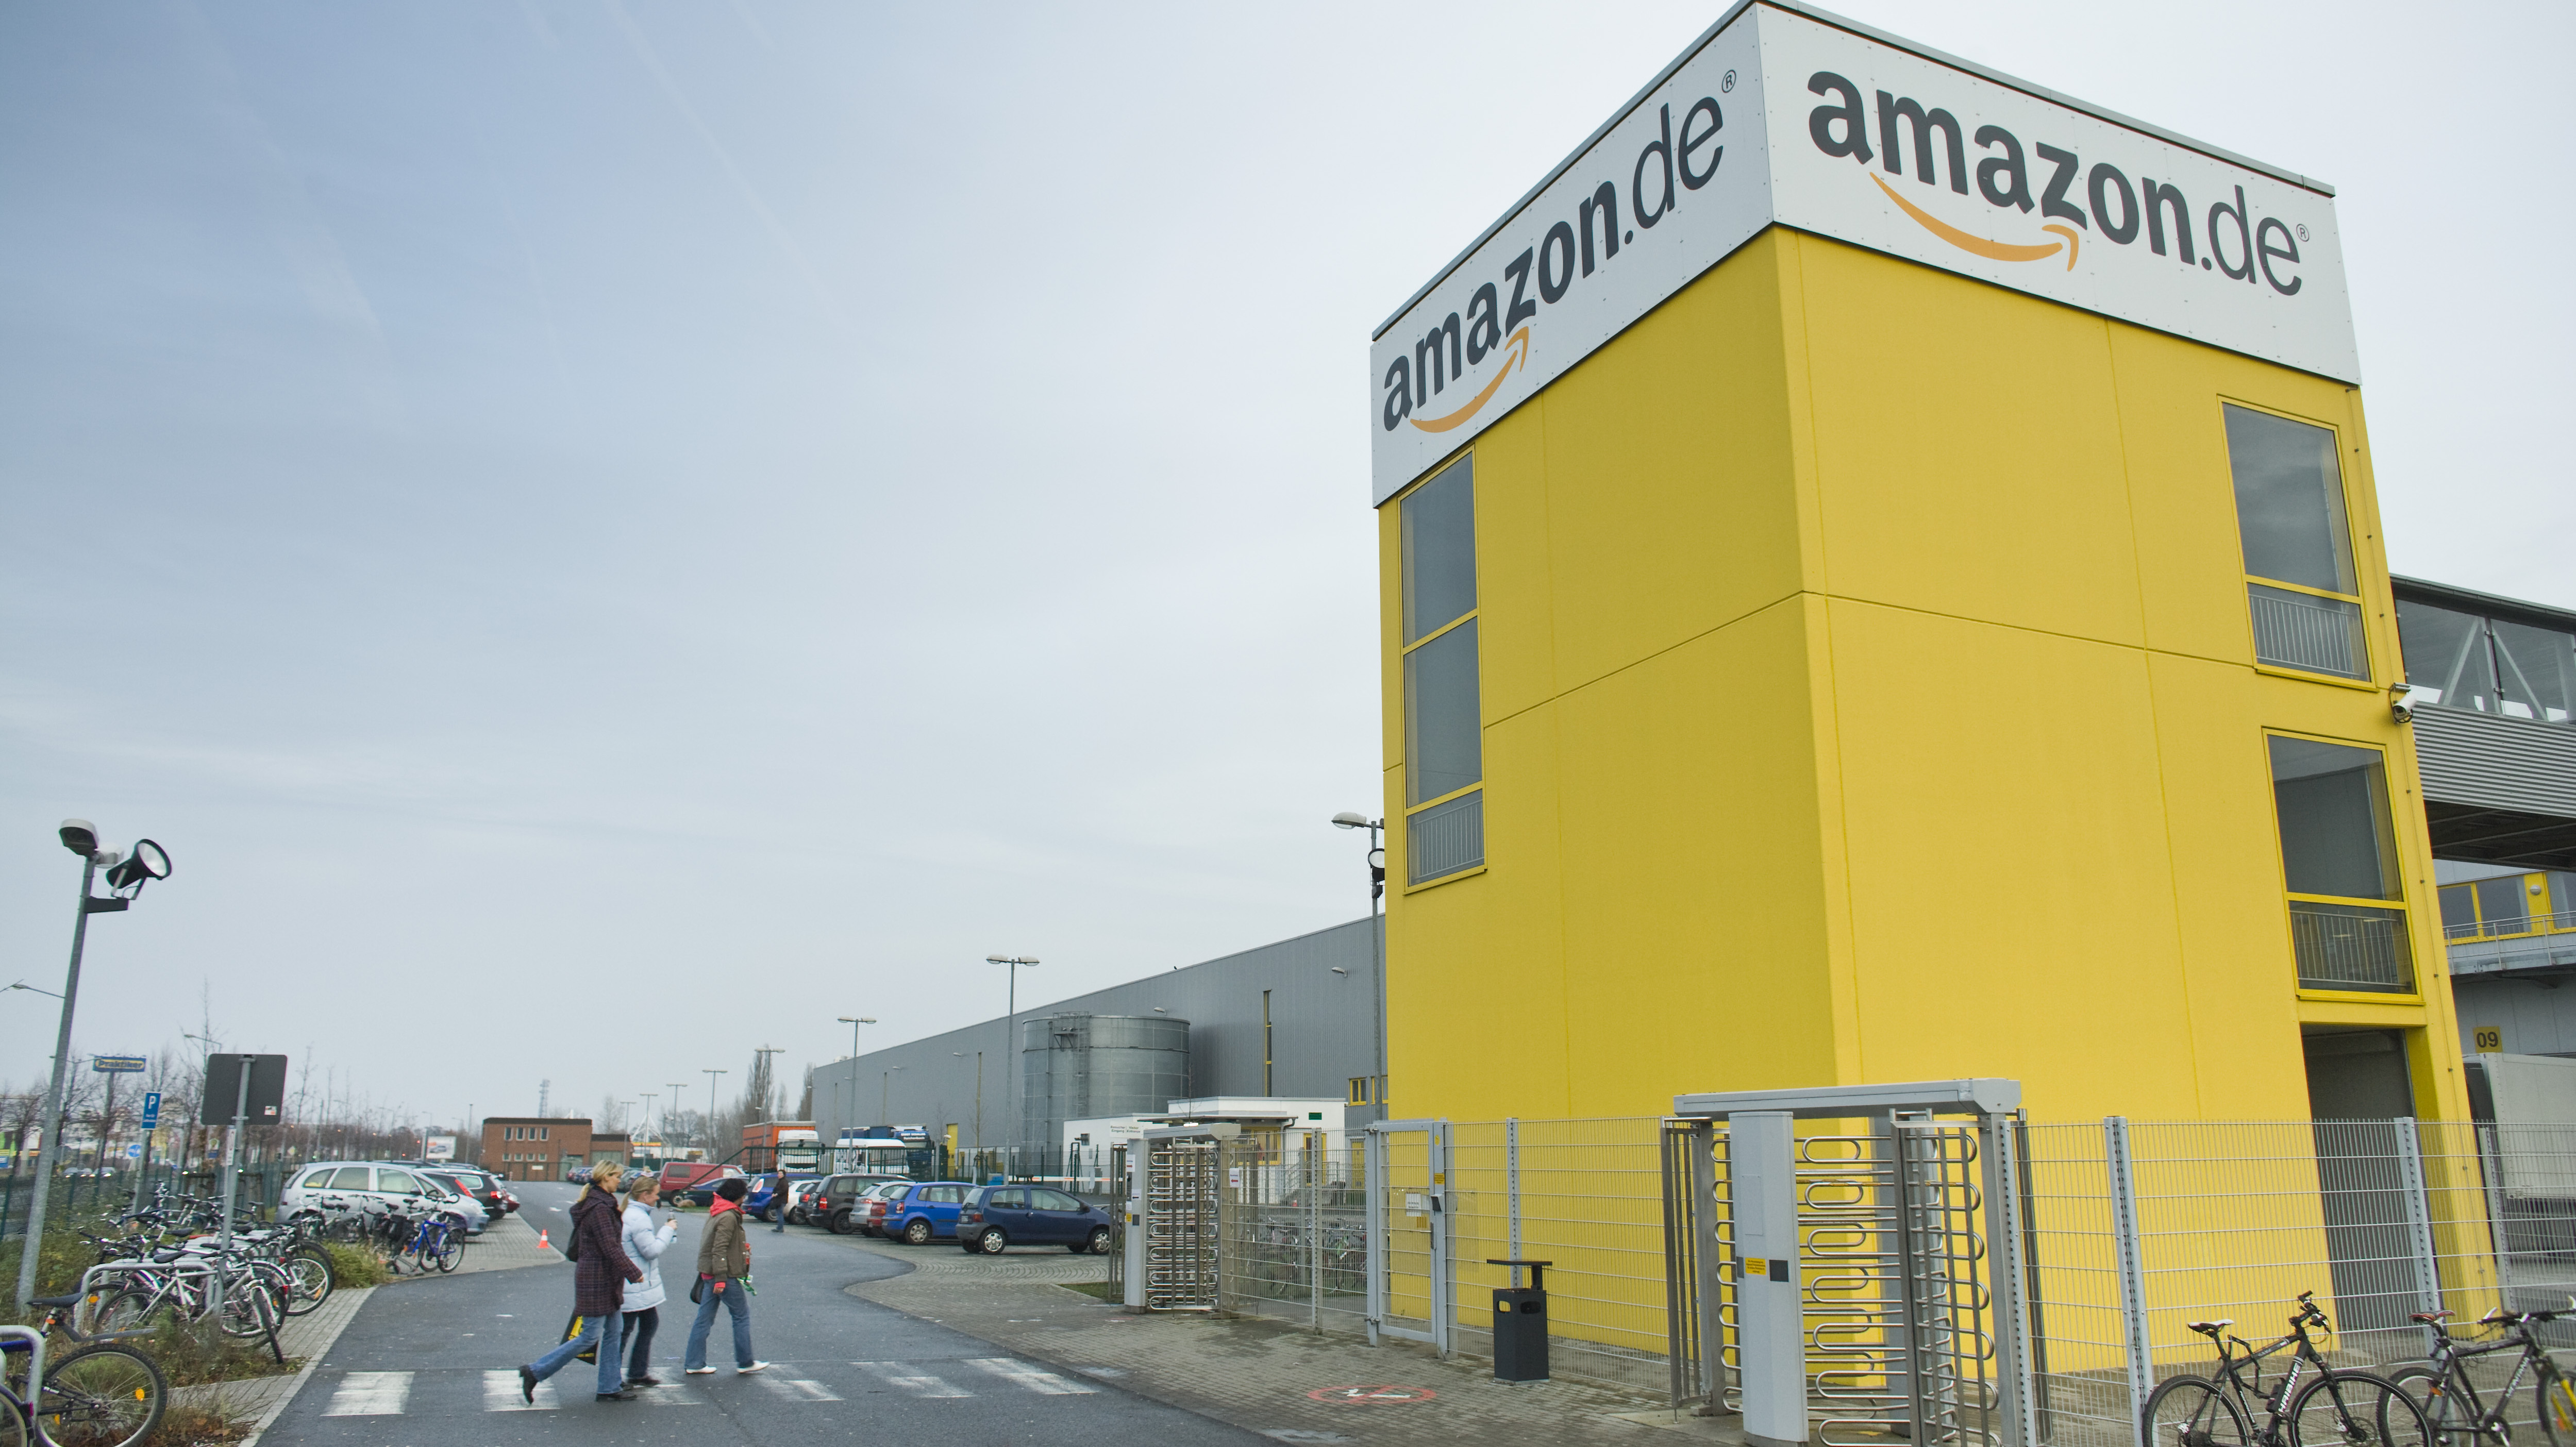 Bericht: Amazon plant Zwei-Stunden-Lieferung in Berlin | heise online